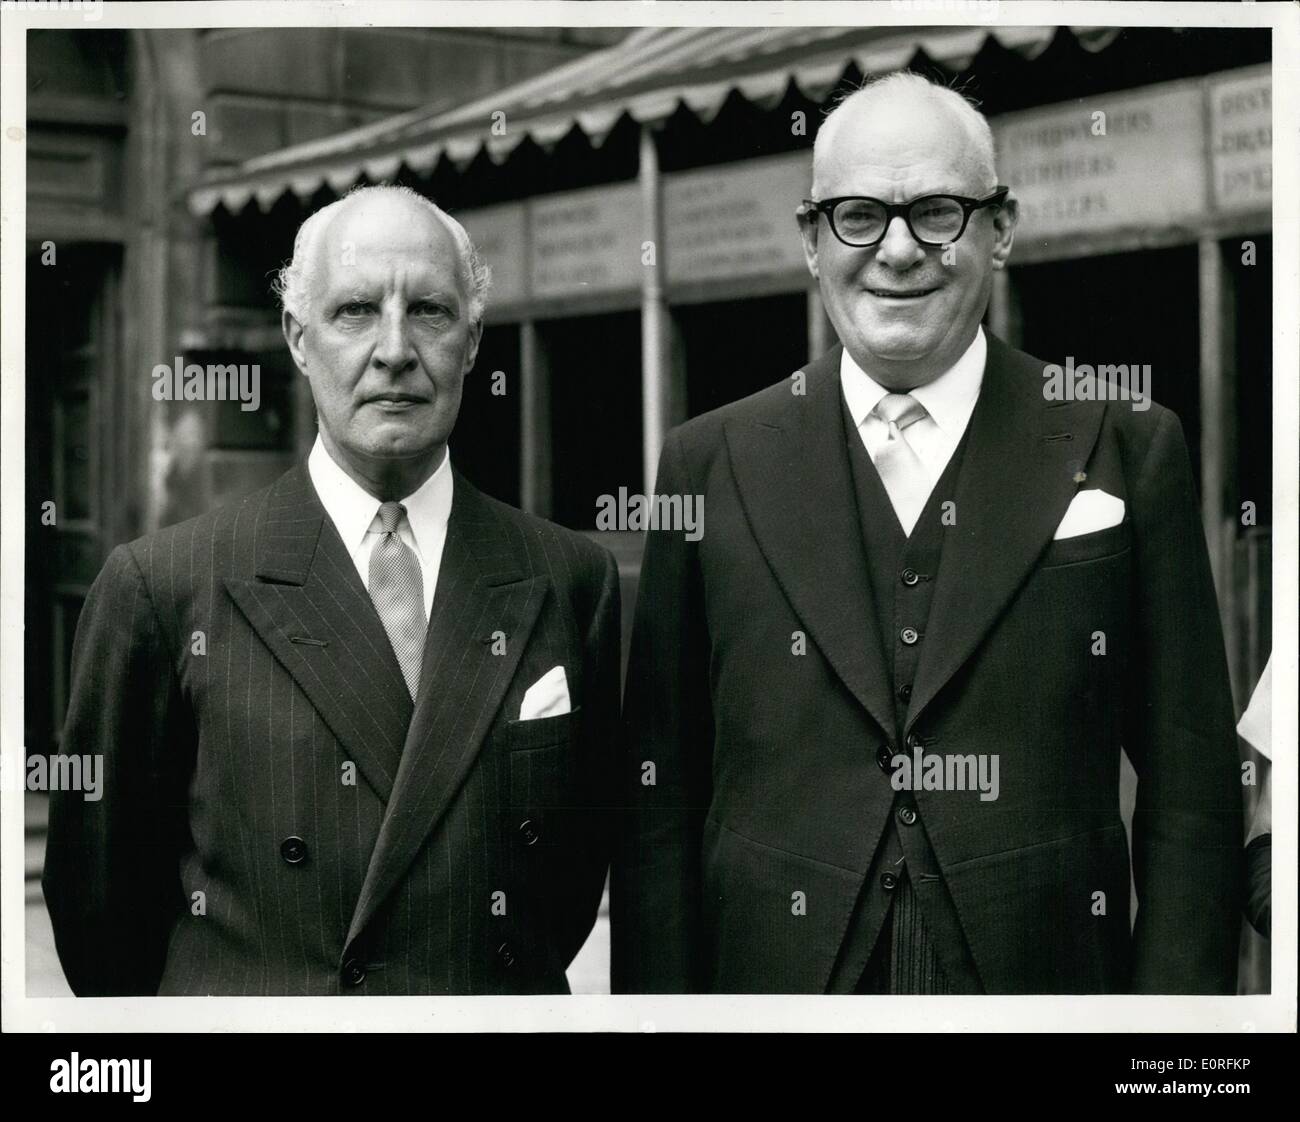 06 de junio de 1959 - New City SheriffsLa elección para los sheriffs de la Ciudad de Londres tuvo lugar en el Guildhall, esta tarde. La imagen muestra: Los dos nuevos sheriffs Alderman Hubert Pitman (izquierda) y el Sr. Cyril Derry (derecha) - fotografiados después de la elección Foto de stock